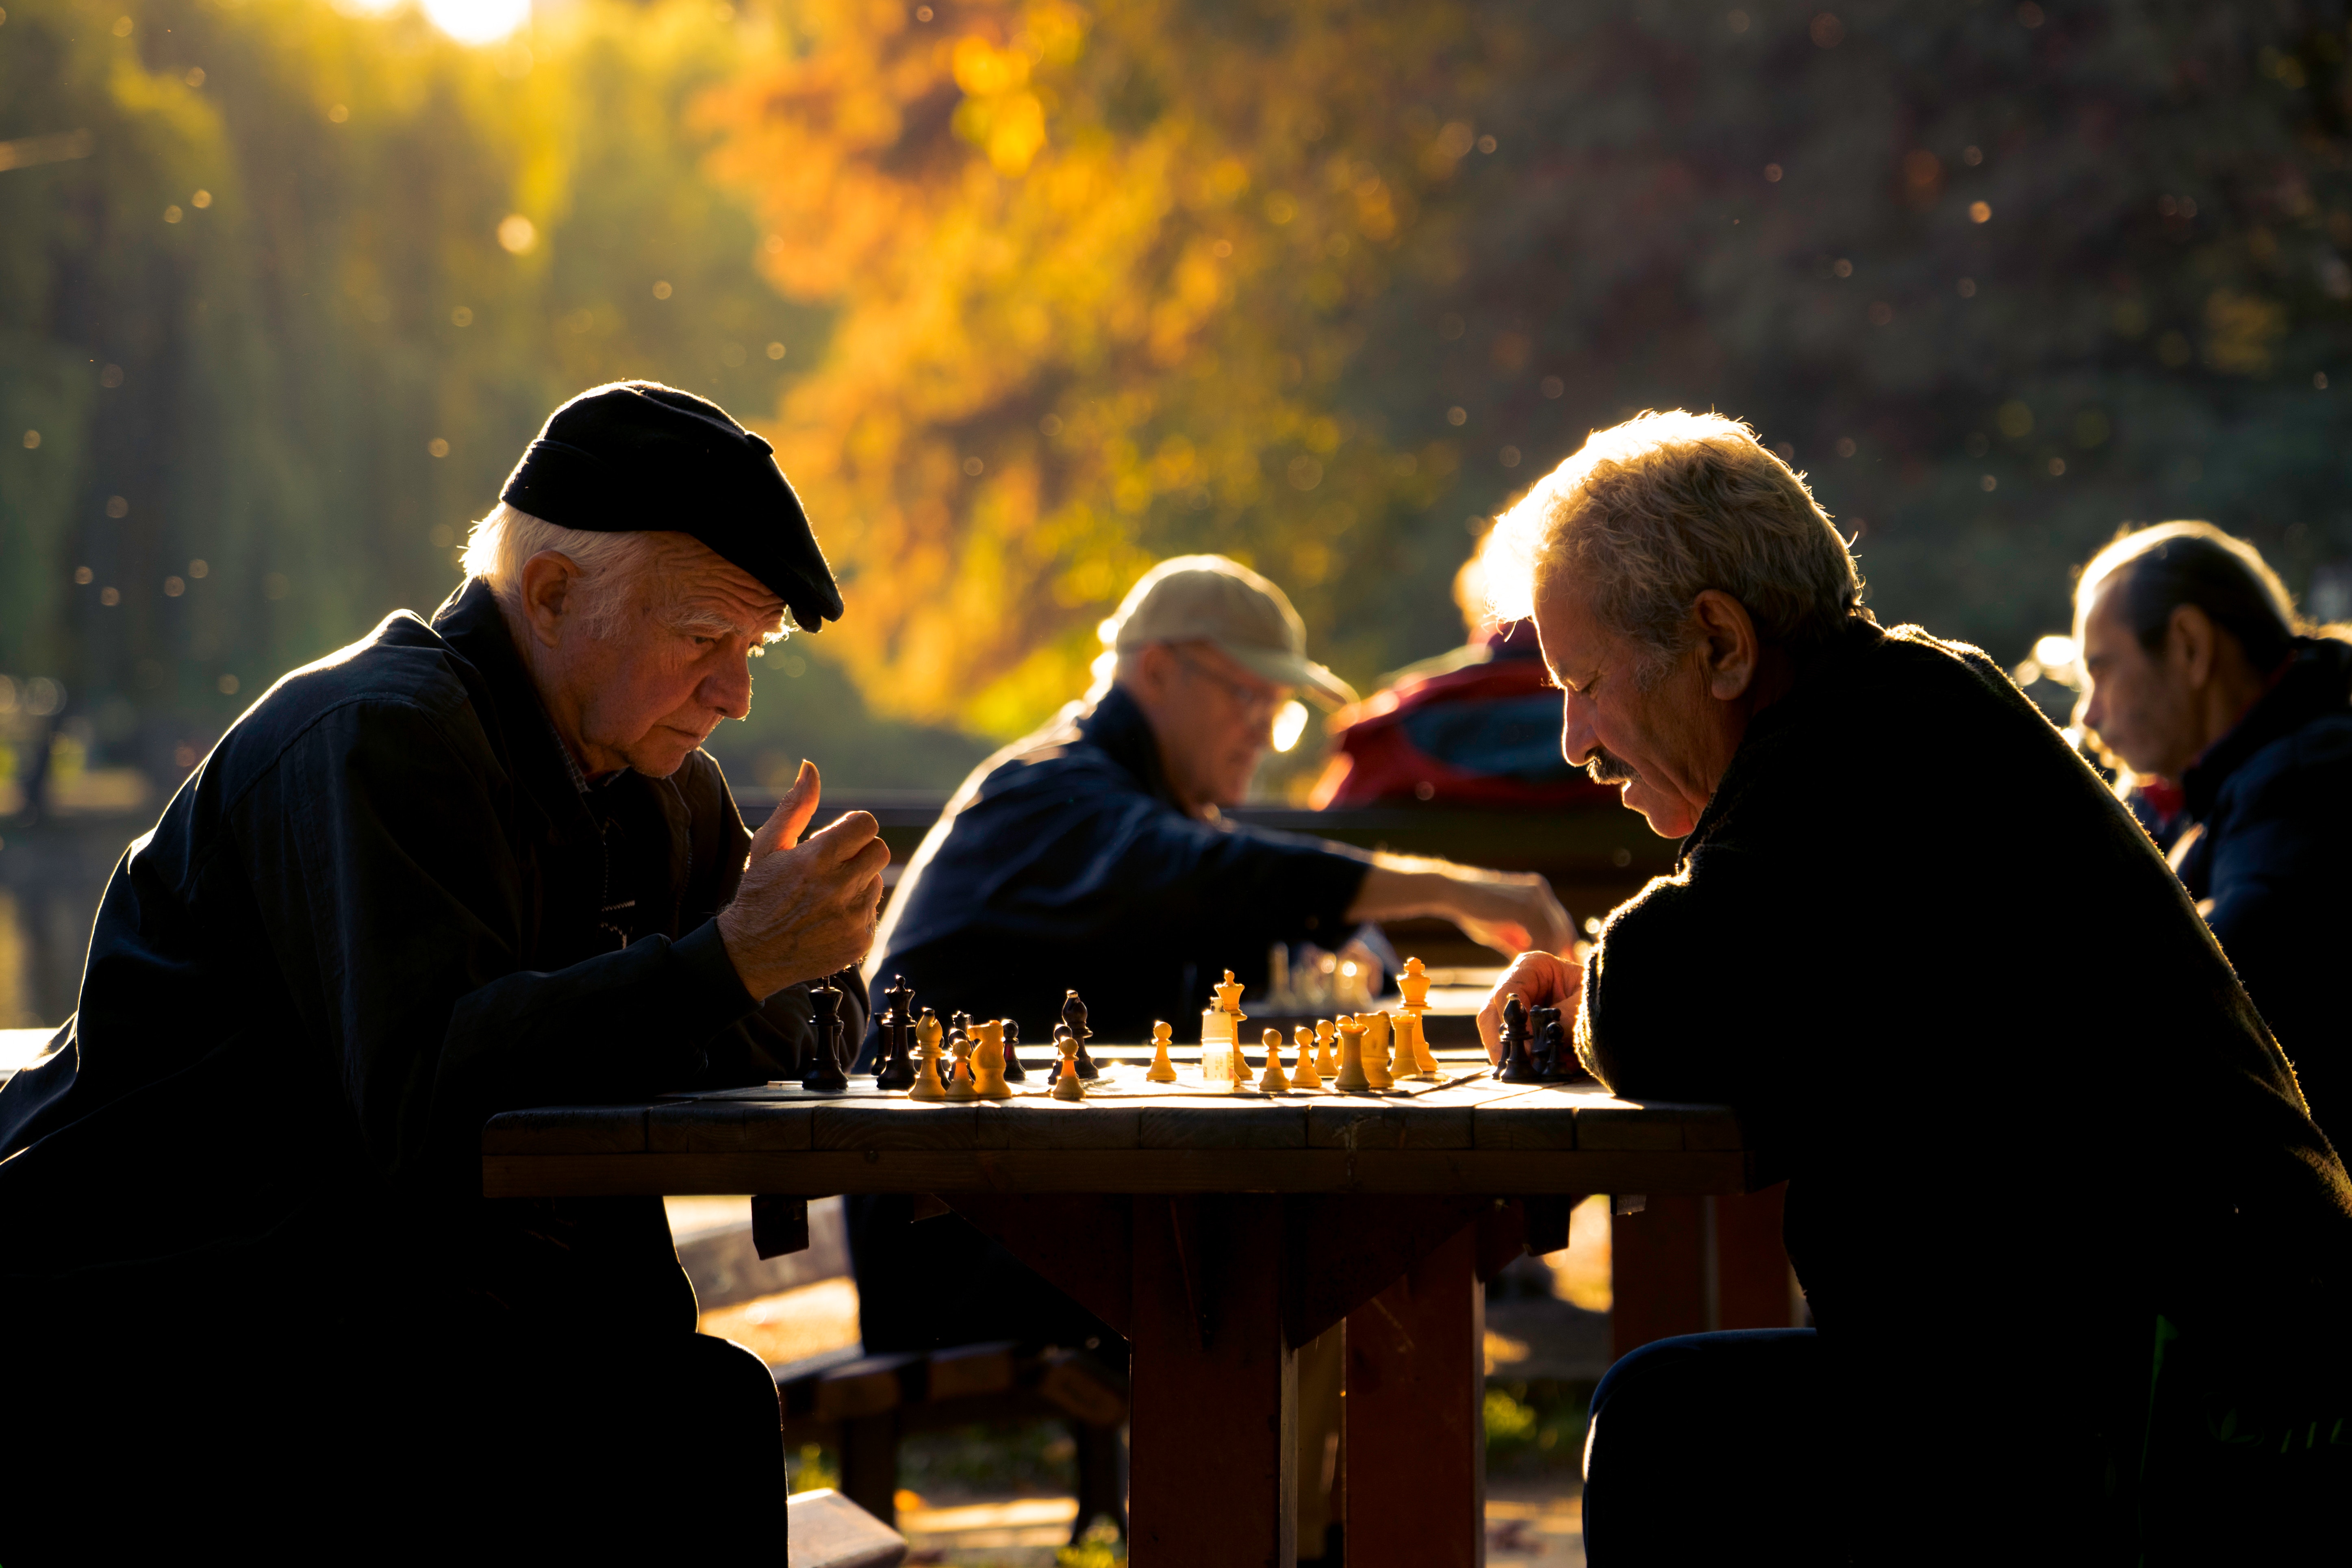 seniors playing chess